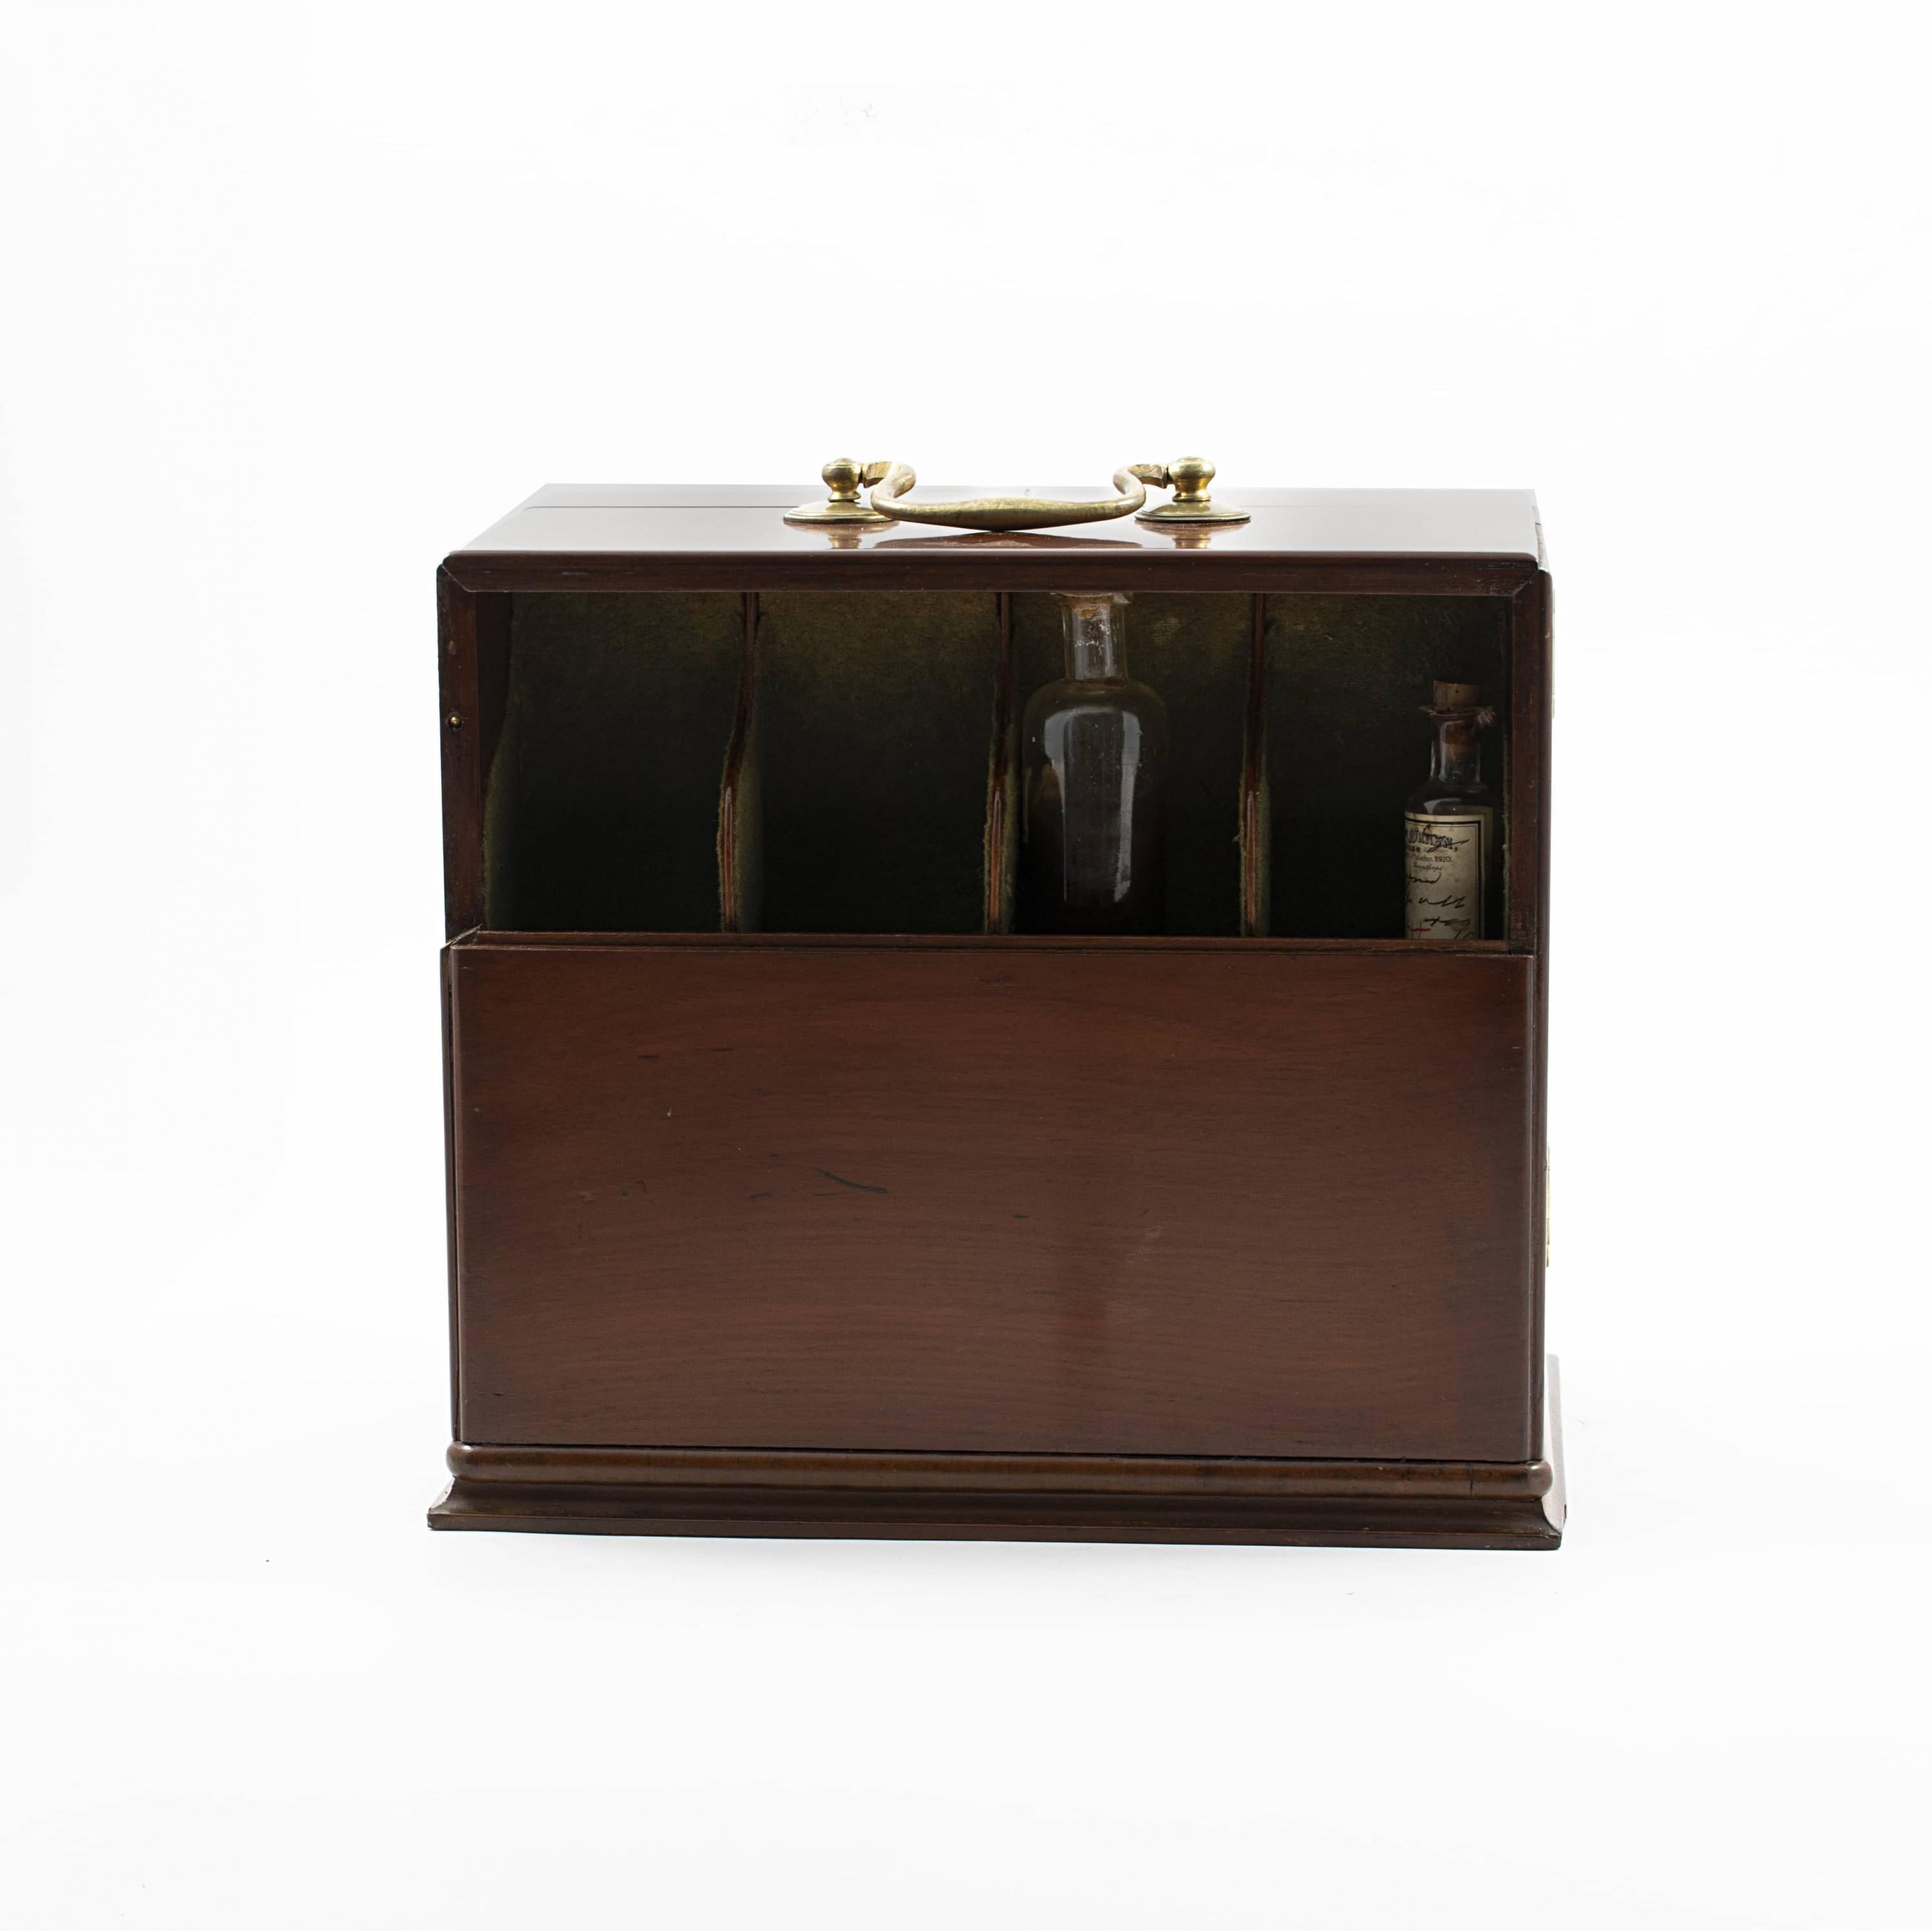 Brass Early 19th Century English Mahogany Travel Apothecary Box, 1810-1820